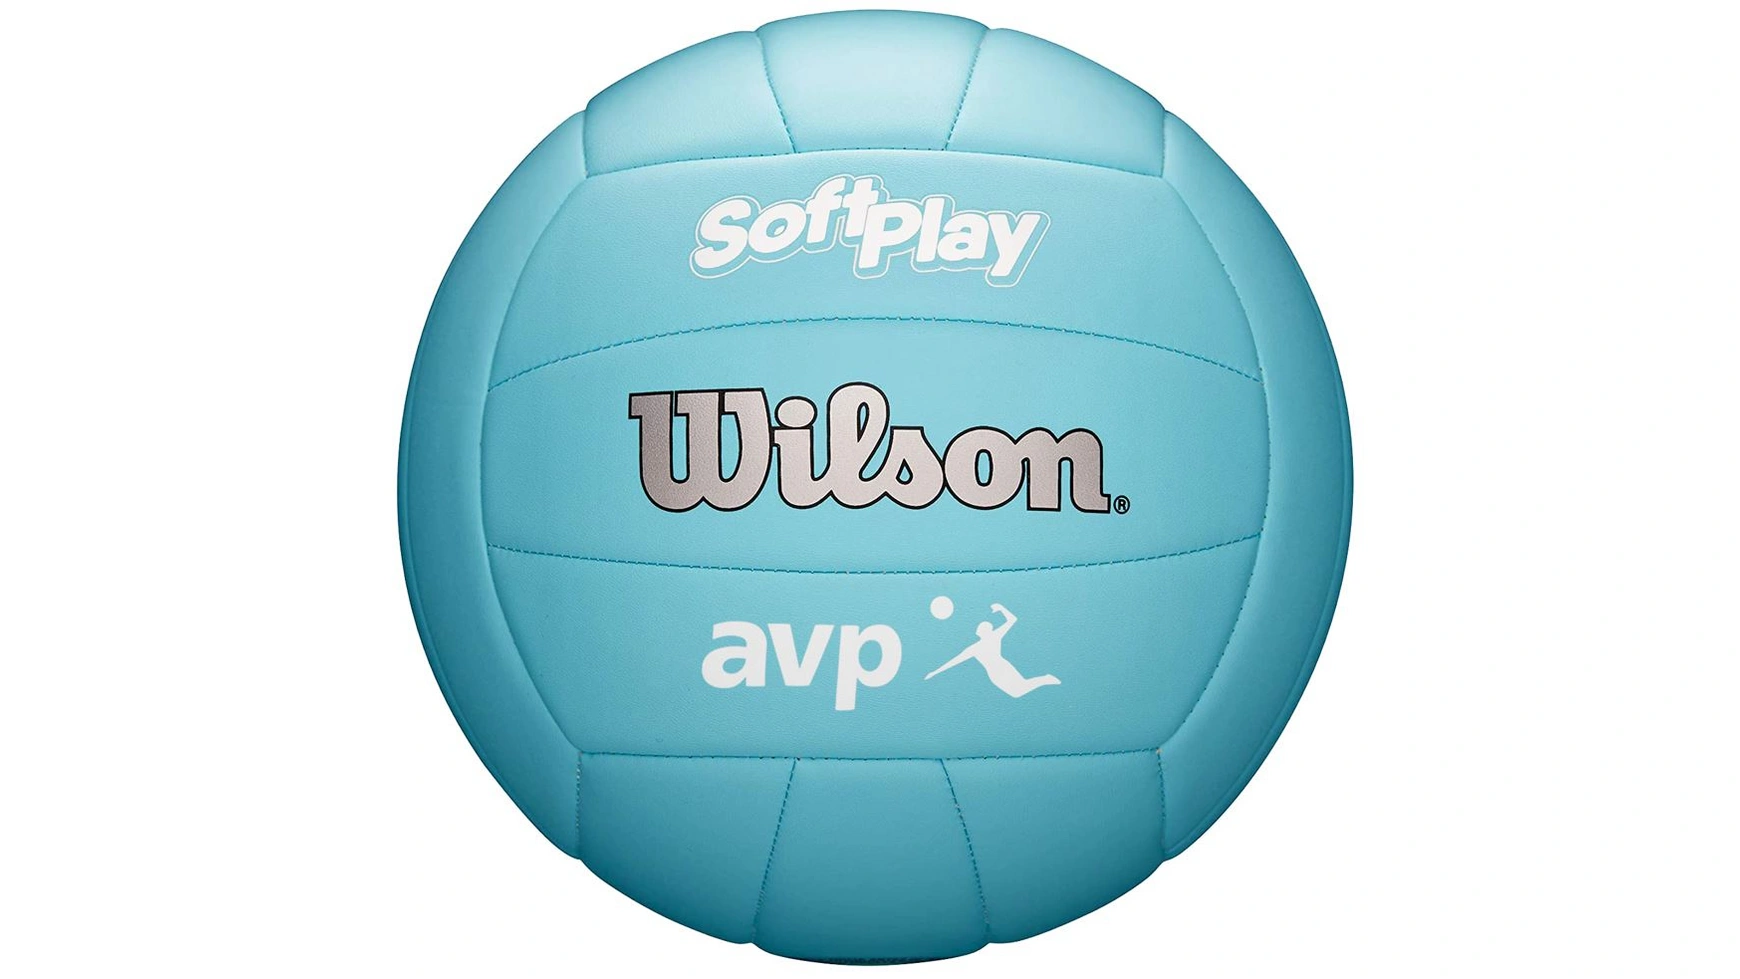 Wilson Volleyball AVP Soft Play, синий, размер 5 высококачественный мяч для волейбола стандартный размер 5 мяч из пу для студентов взрослых и подростков тренировочный мяч для соревнован